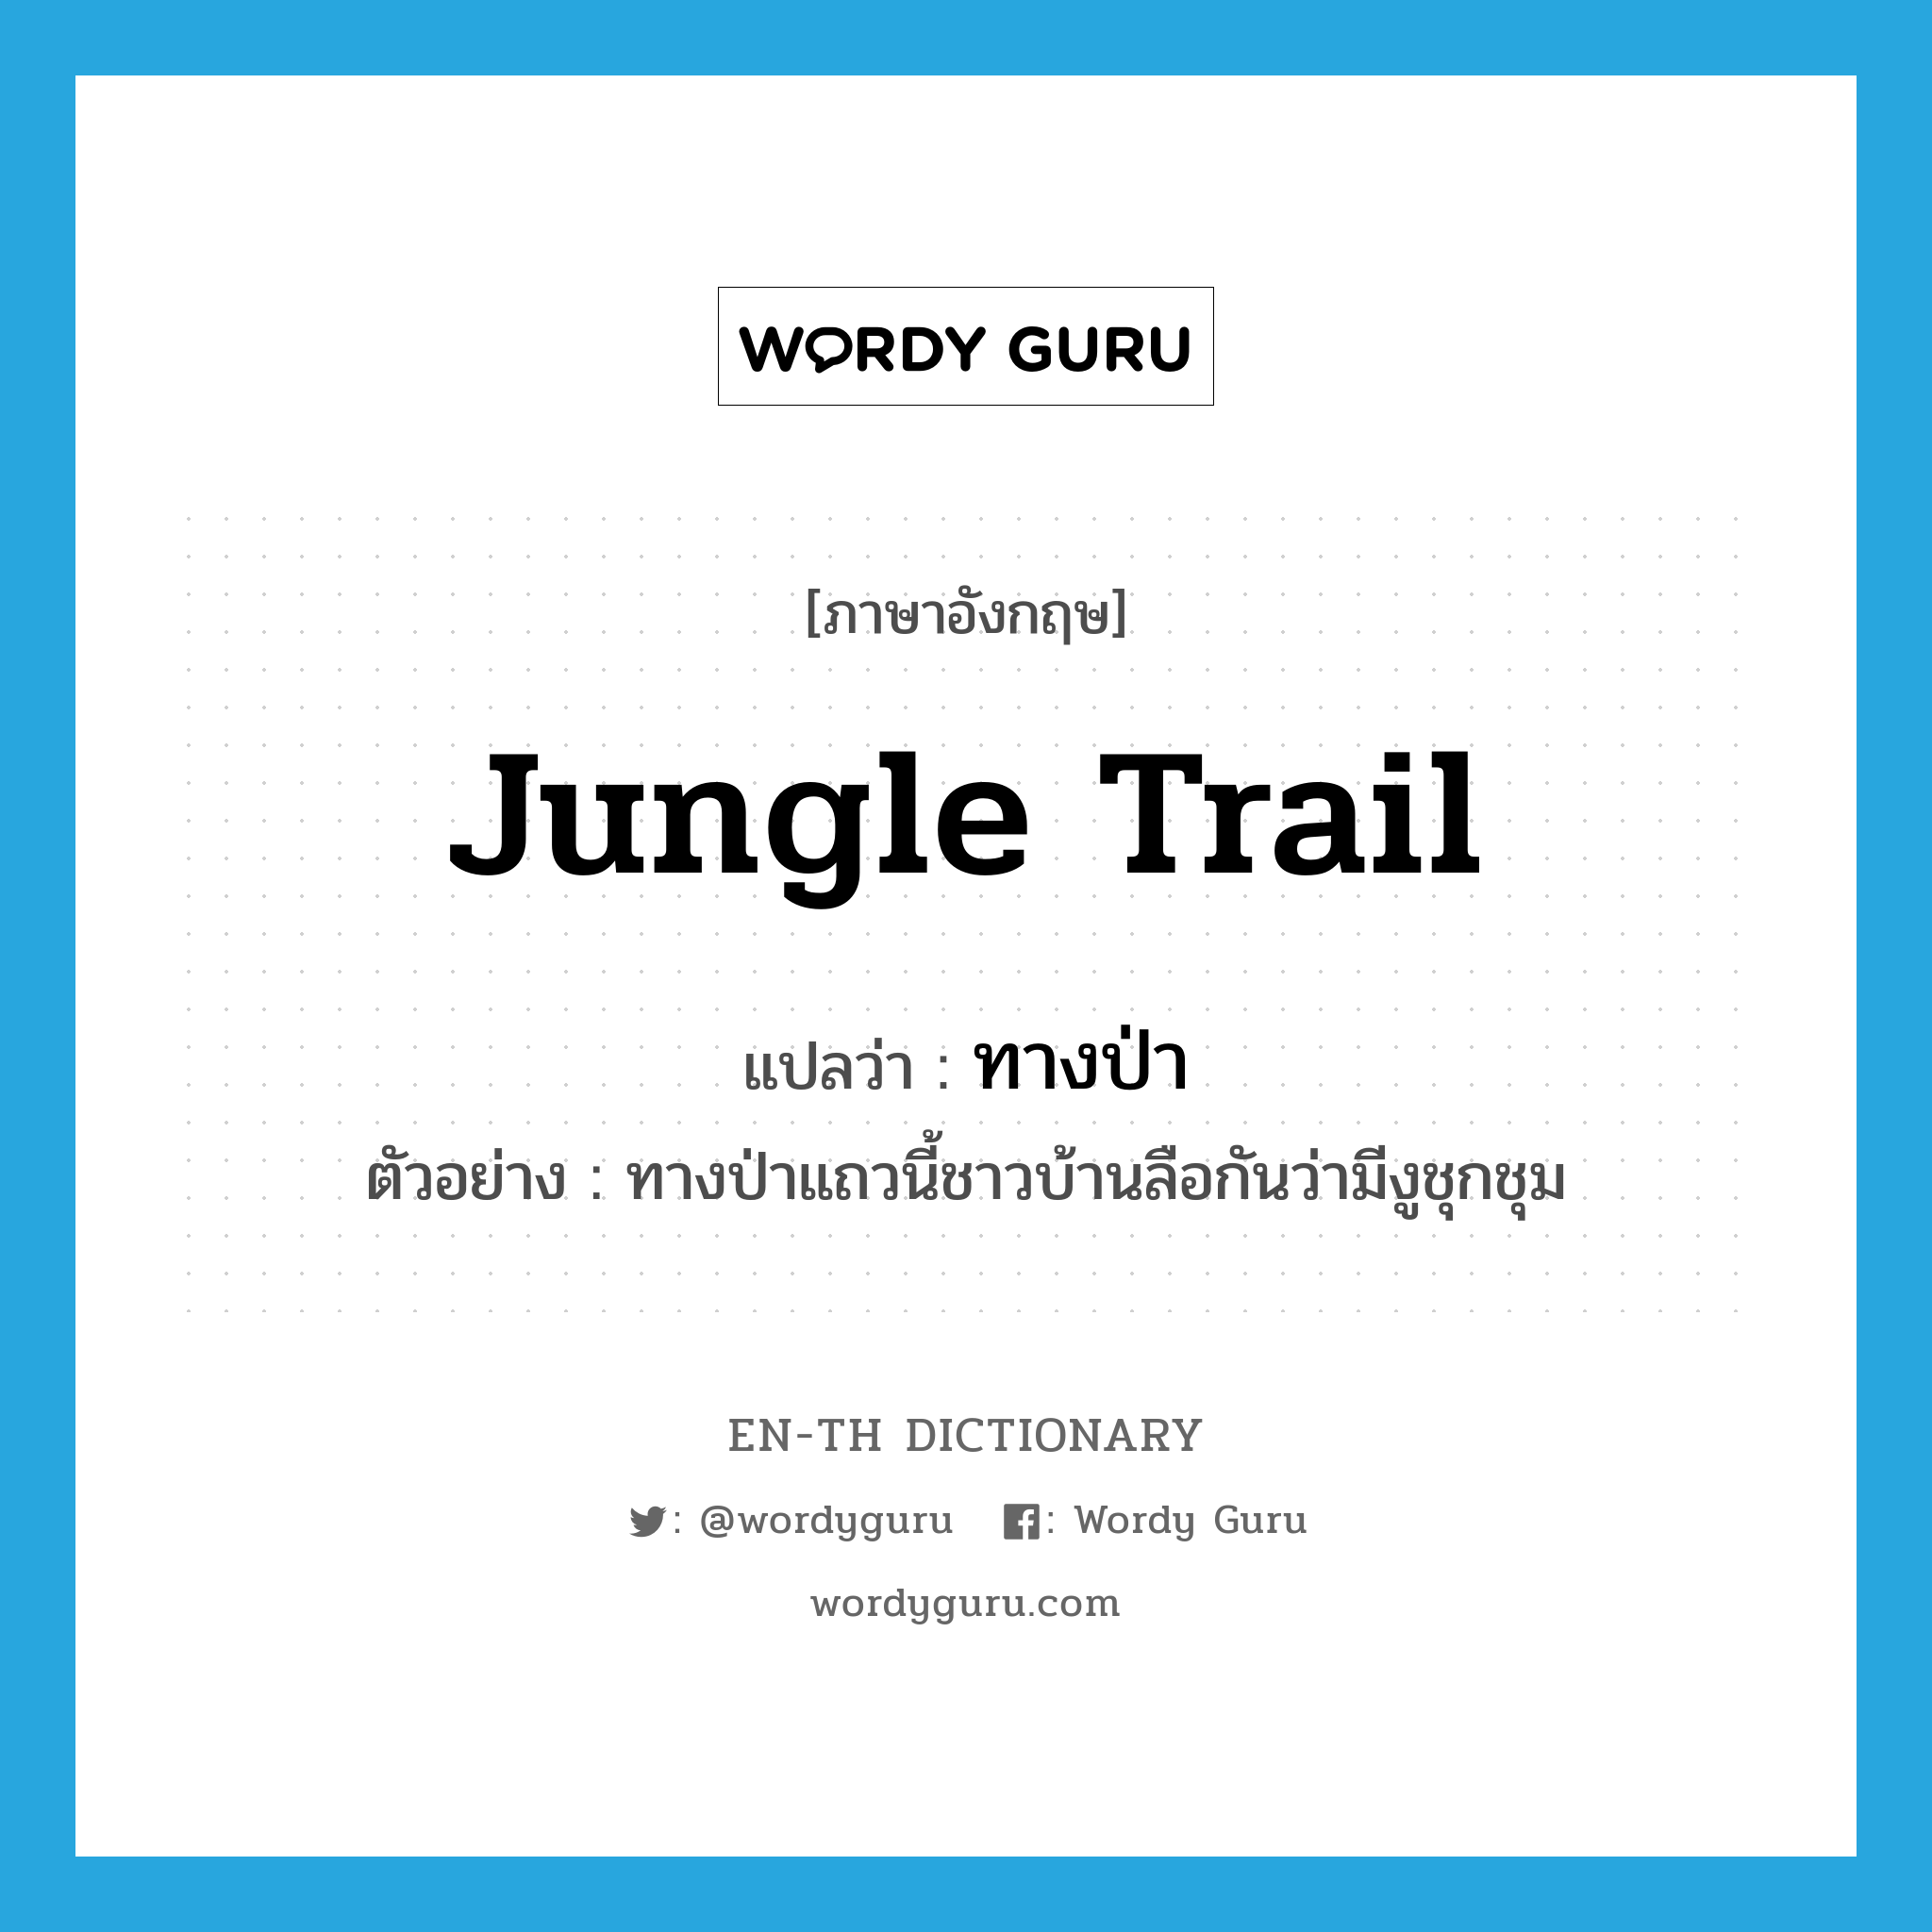 jungle trail แปลว่า?, คำศัพท์ภาษาอังกฤษ jungle trail แปลว่า ทางป่า ประเภท N ตัวอย่าง ทางป่าแถวนี้ชาวบ้านลือกันว่ามีงูชุกชุม หมวด N